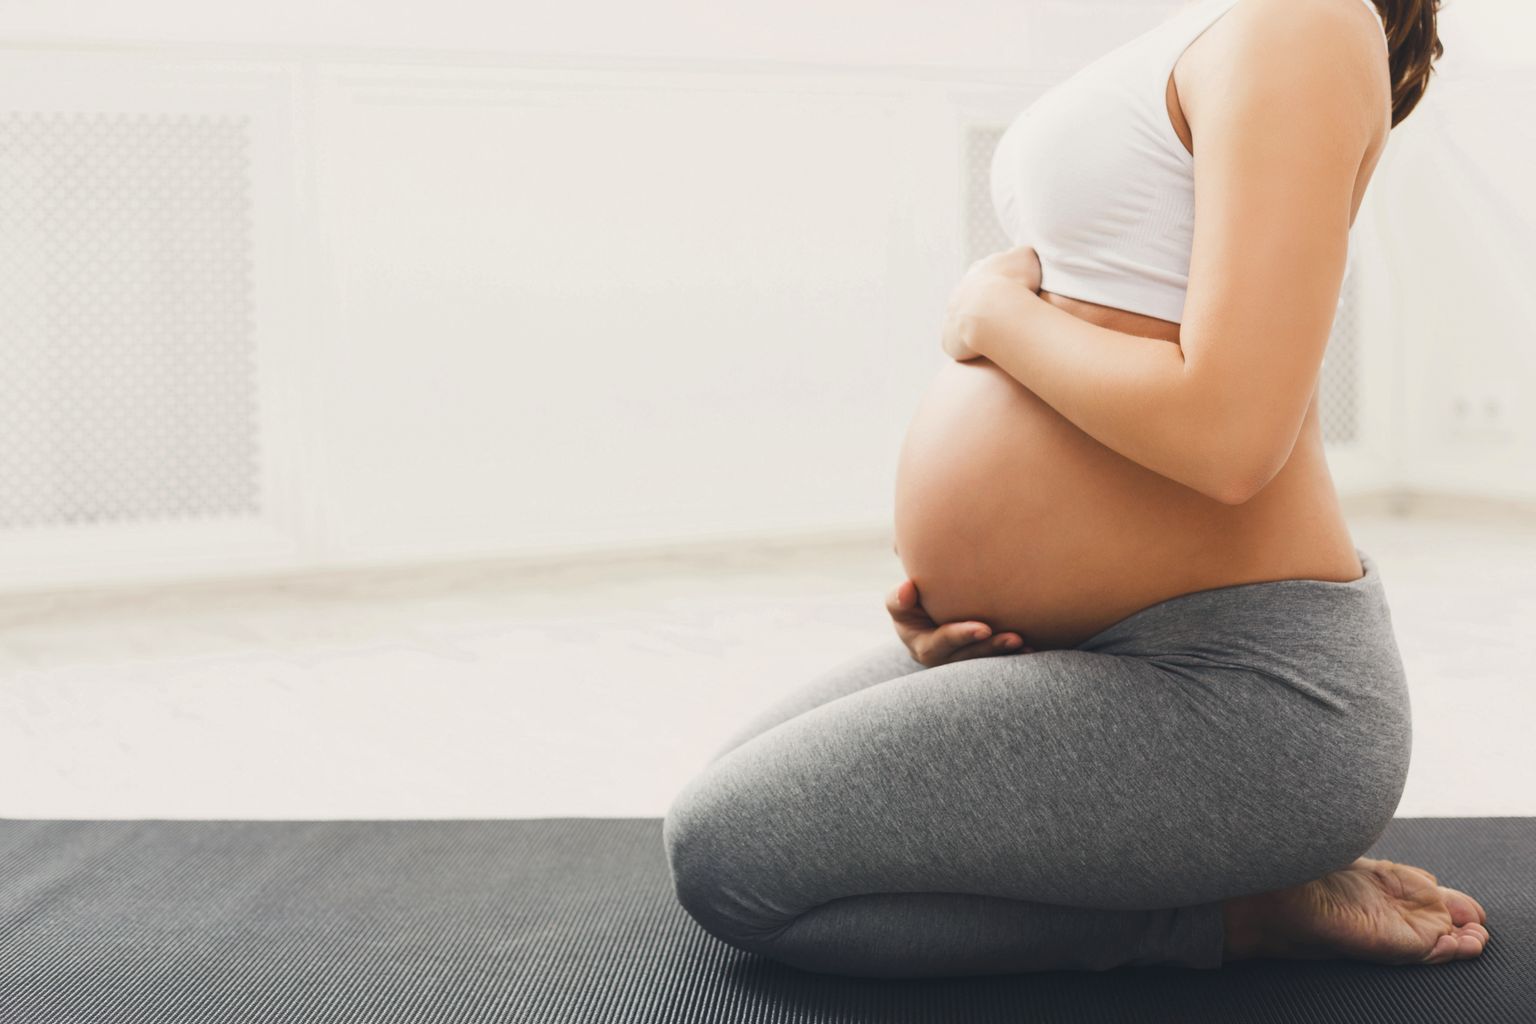 Nicht erkennbare schwangere Frau trainieren Yoga in Heldenposit, indem sie ihren Bauch streichelt. Junge glückliche Erwartung entspannen, über ihr Baby nachdenken und ihr zukünftig